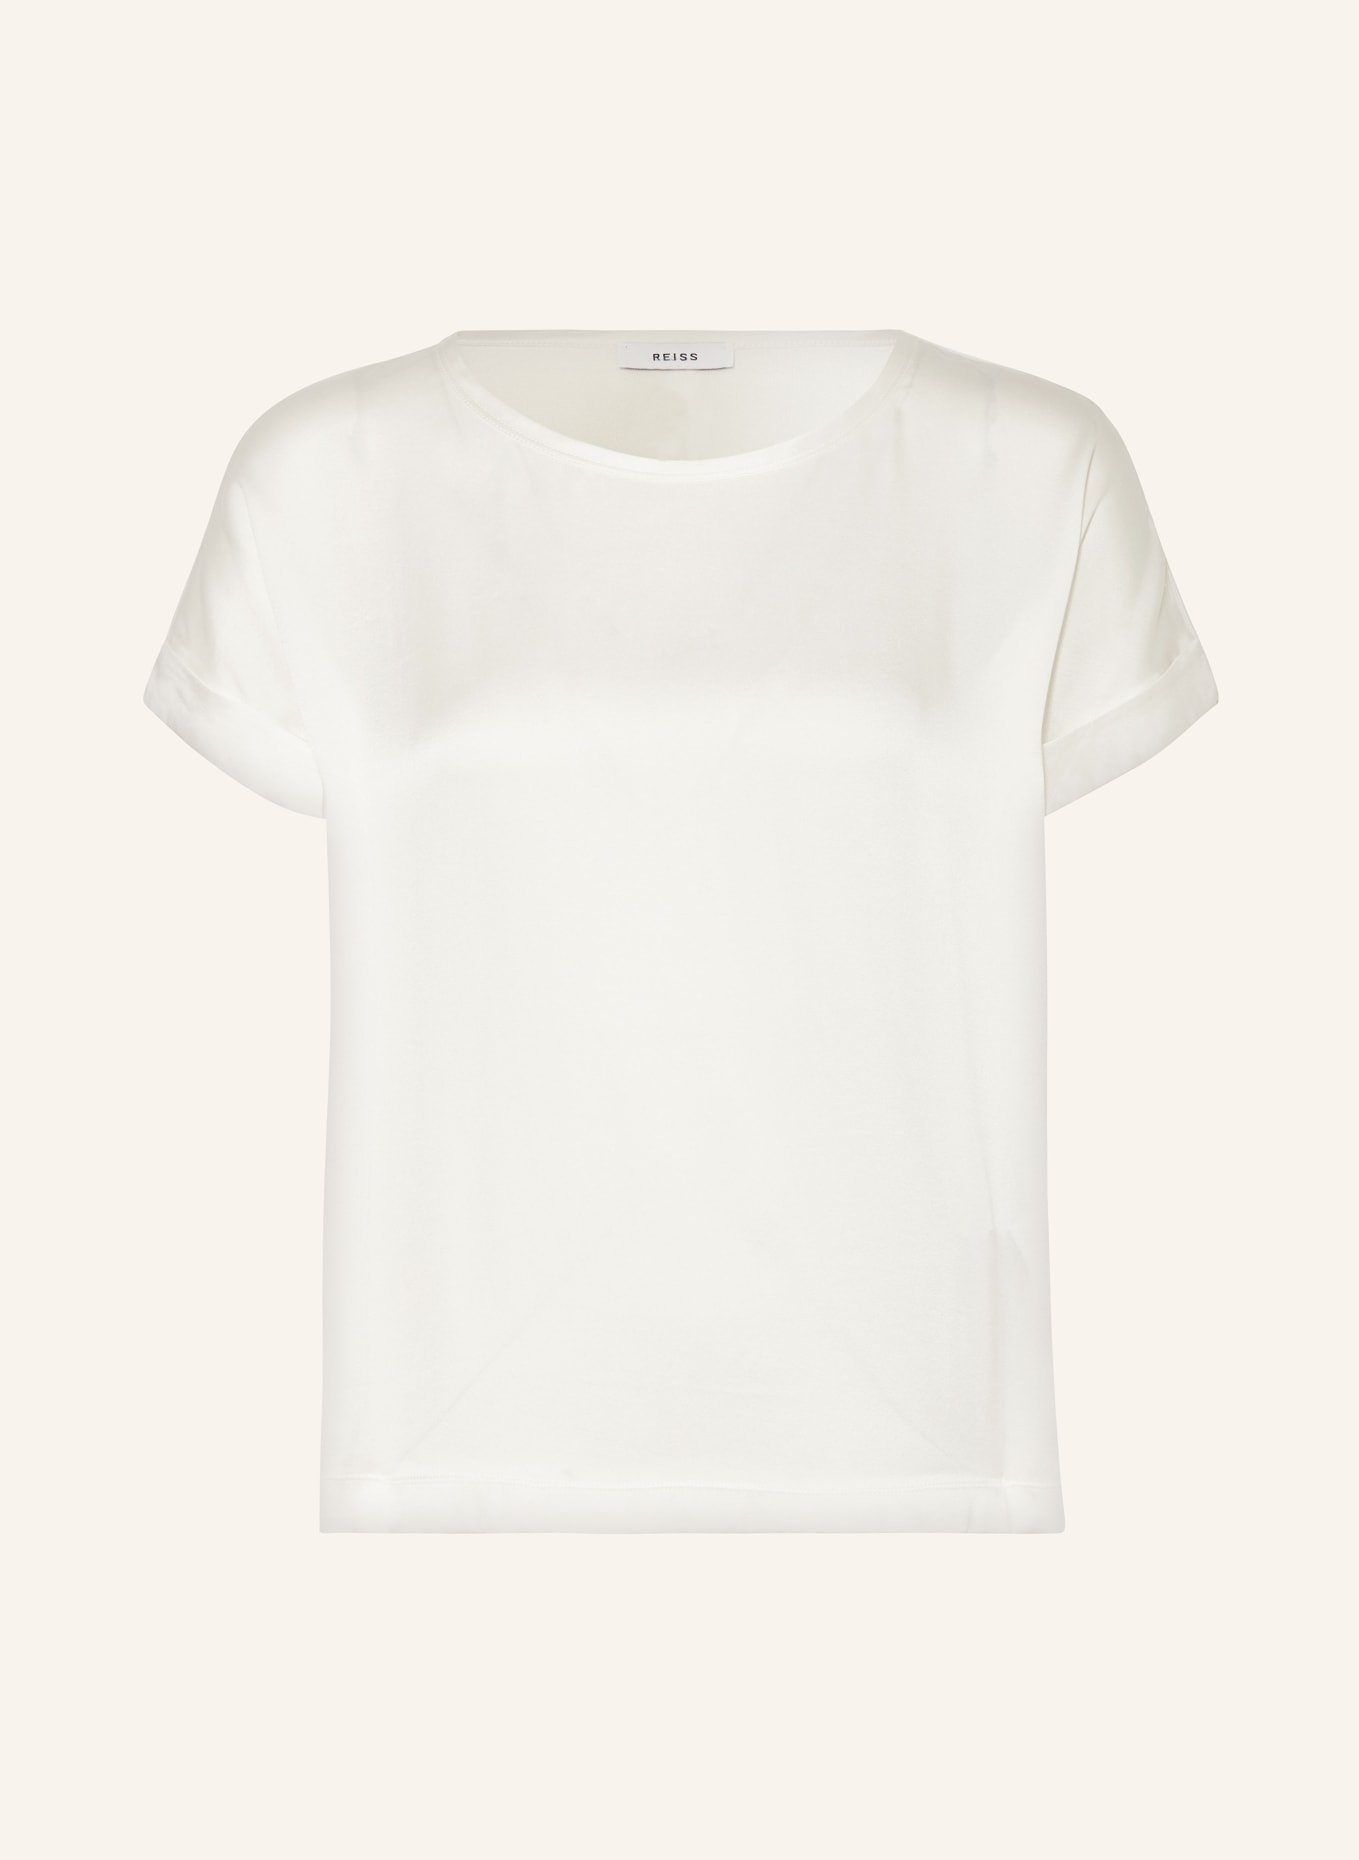 REISS T-Shirt HELEN im Materialmix mit Seide, Farbe: ECRU (Bild 1)